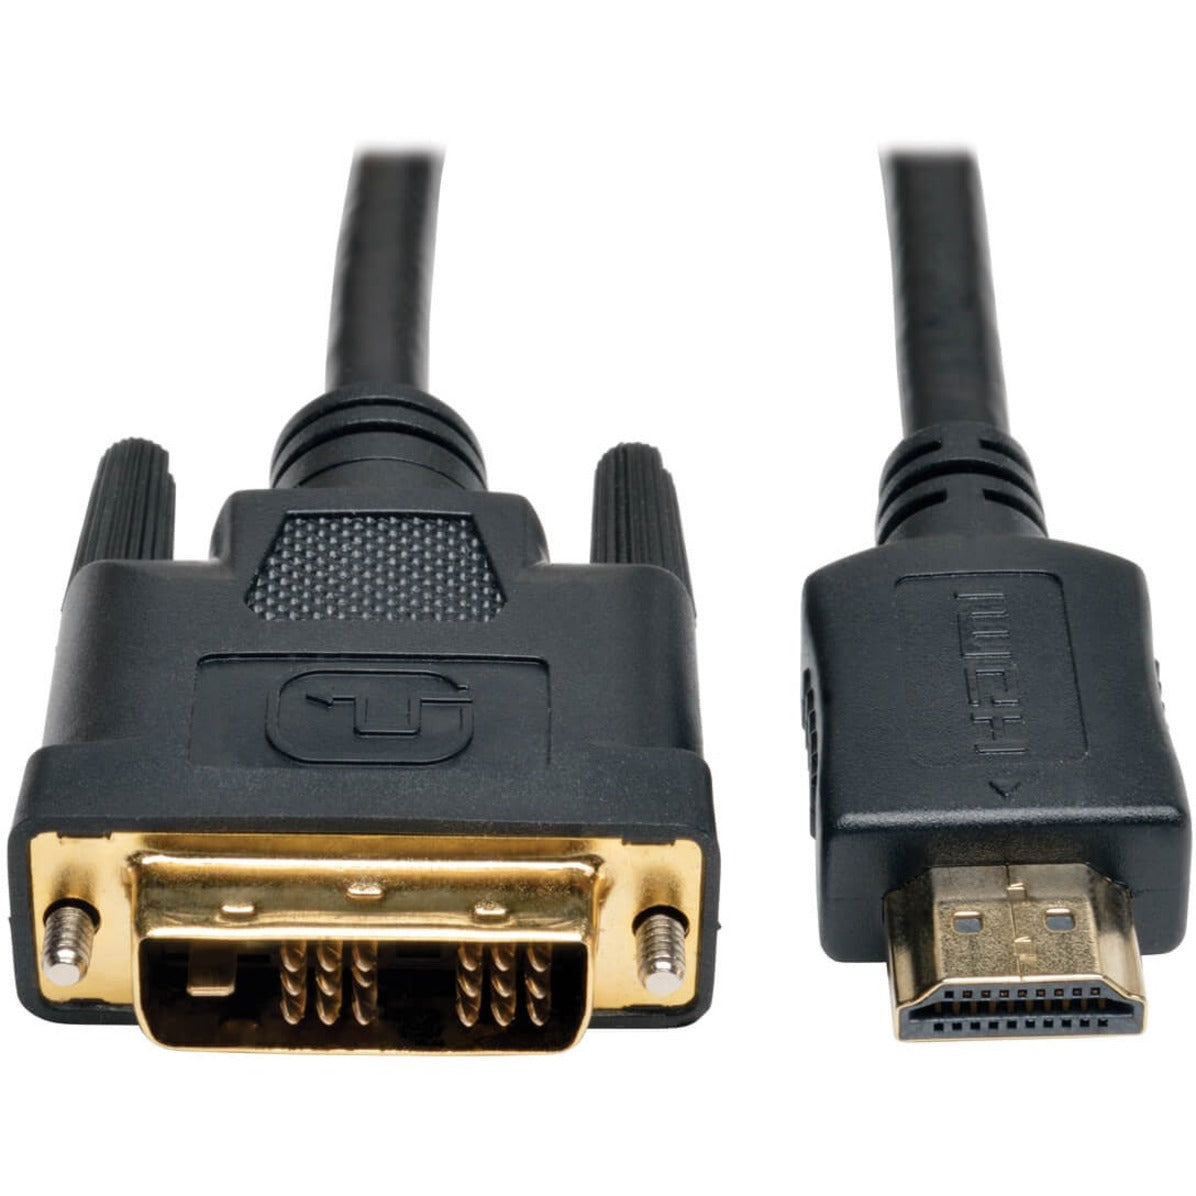 Tripp Lite P566-020 HDMI zu DVI Kabel 20-ft EMI/RF Schutz vergoldete Stecker